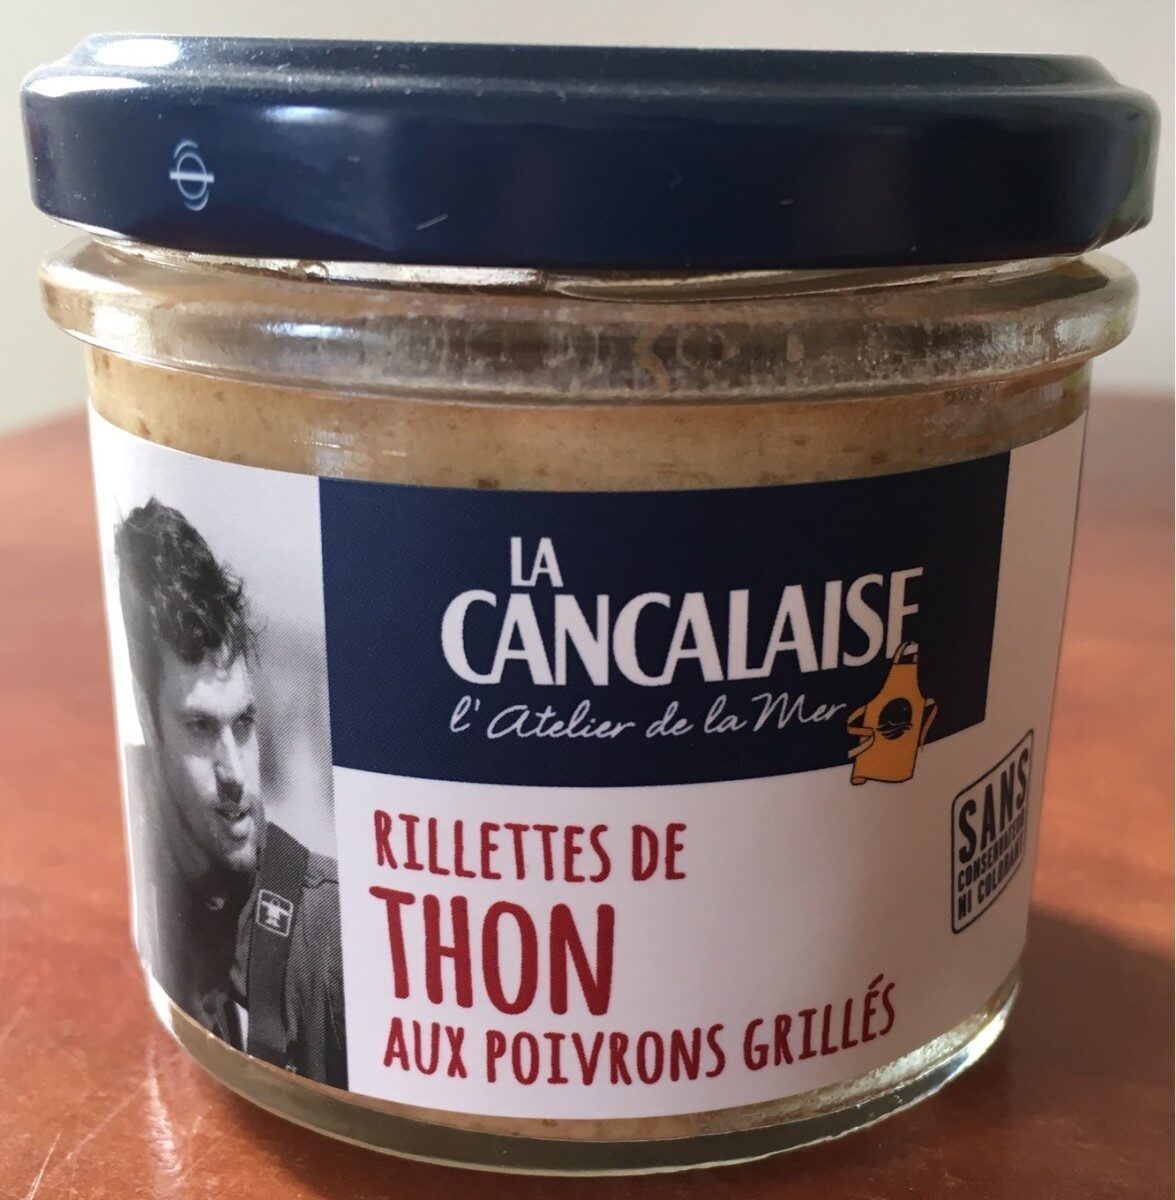 Rillettes de Thon aux poivrons grillés - Product - fr